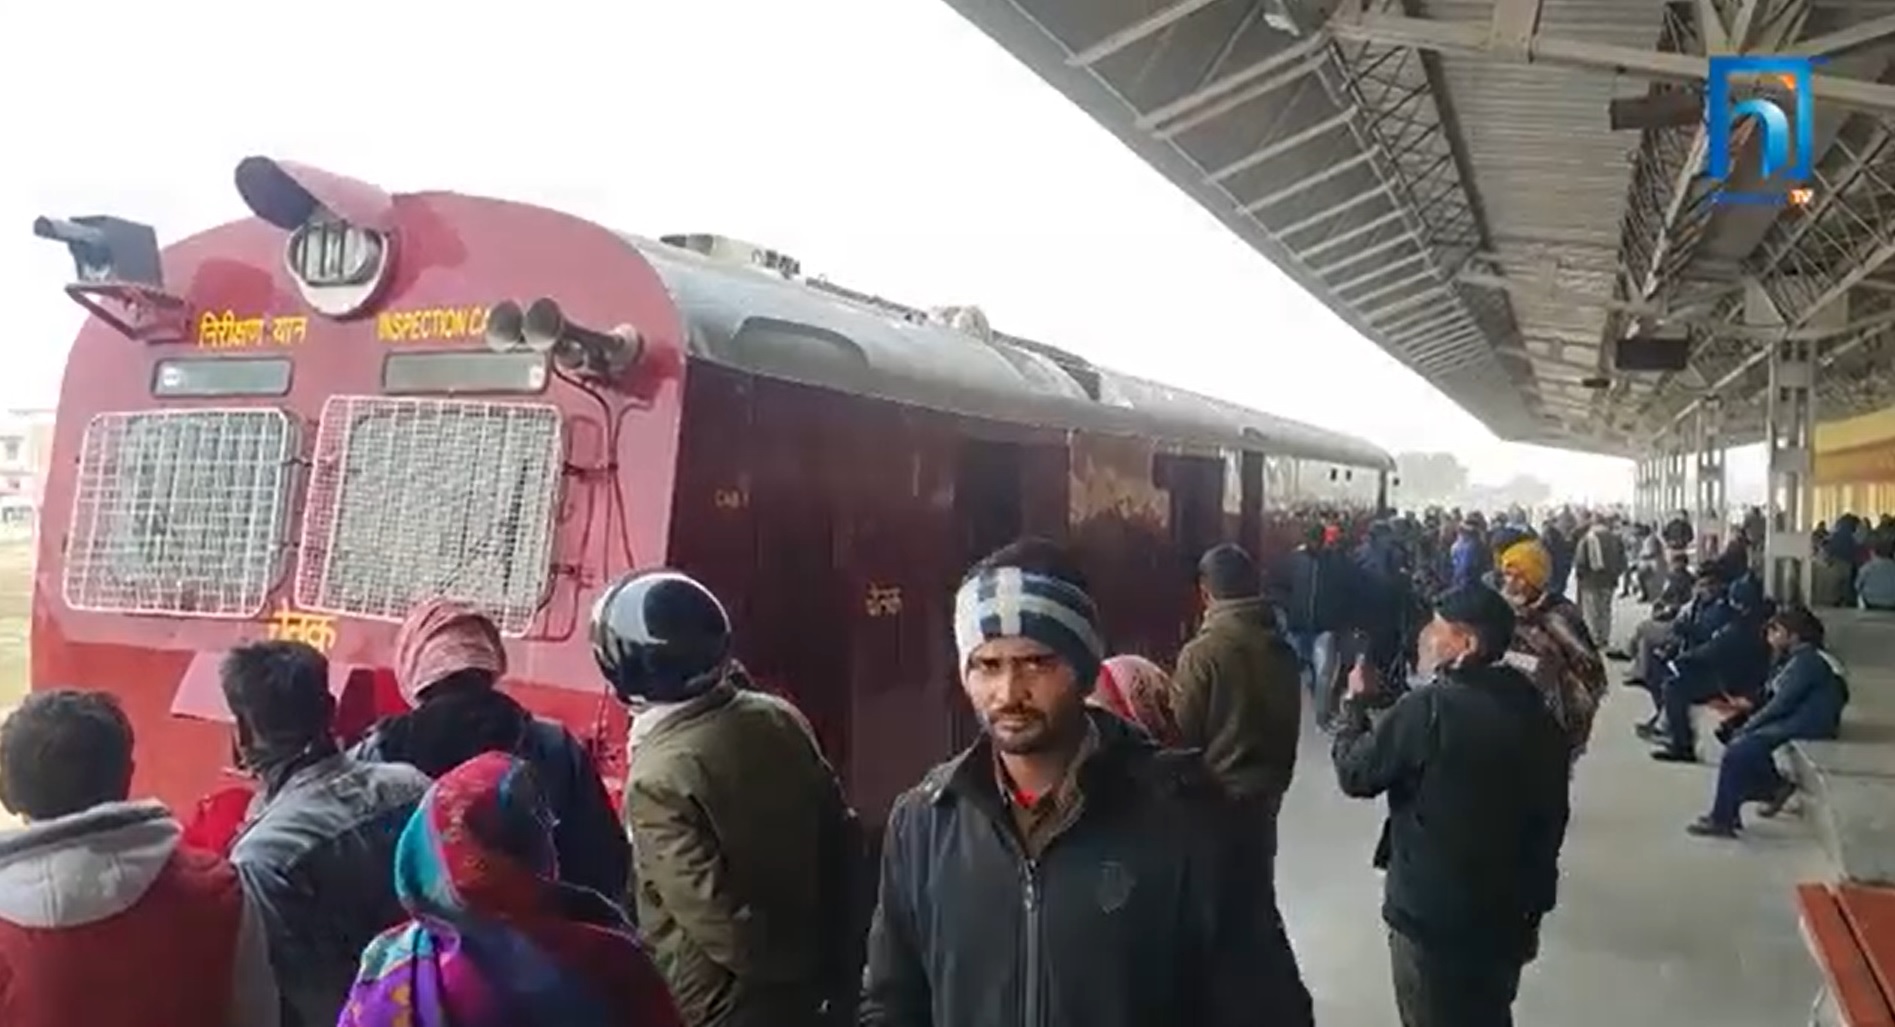 भारतीय समूहको निष्कर्षः रेल संचालनमा समस्या छैन, लिक चोरी दुःखद् ! (भिडियो रिपोर्टसहित)